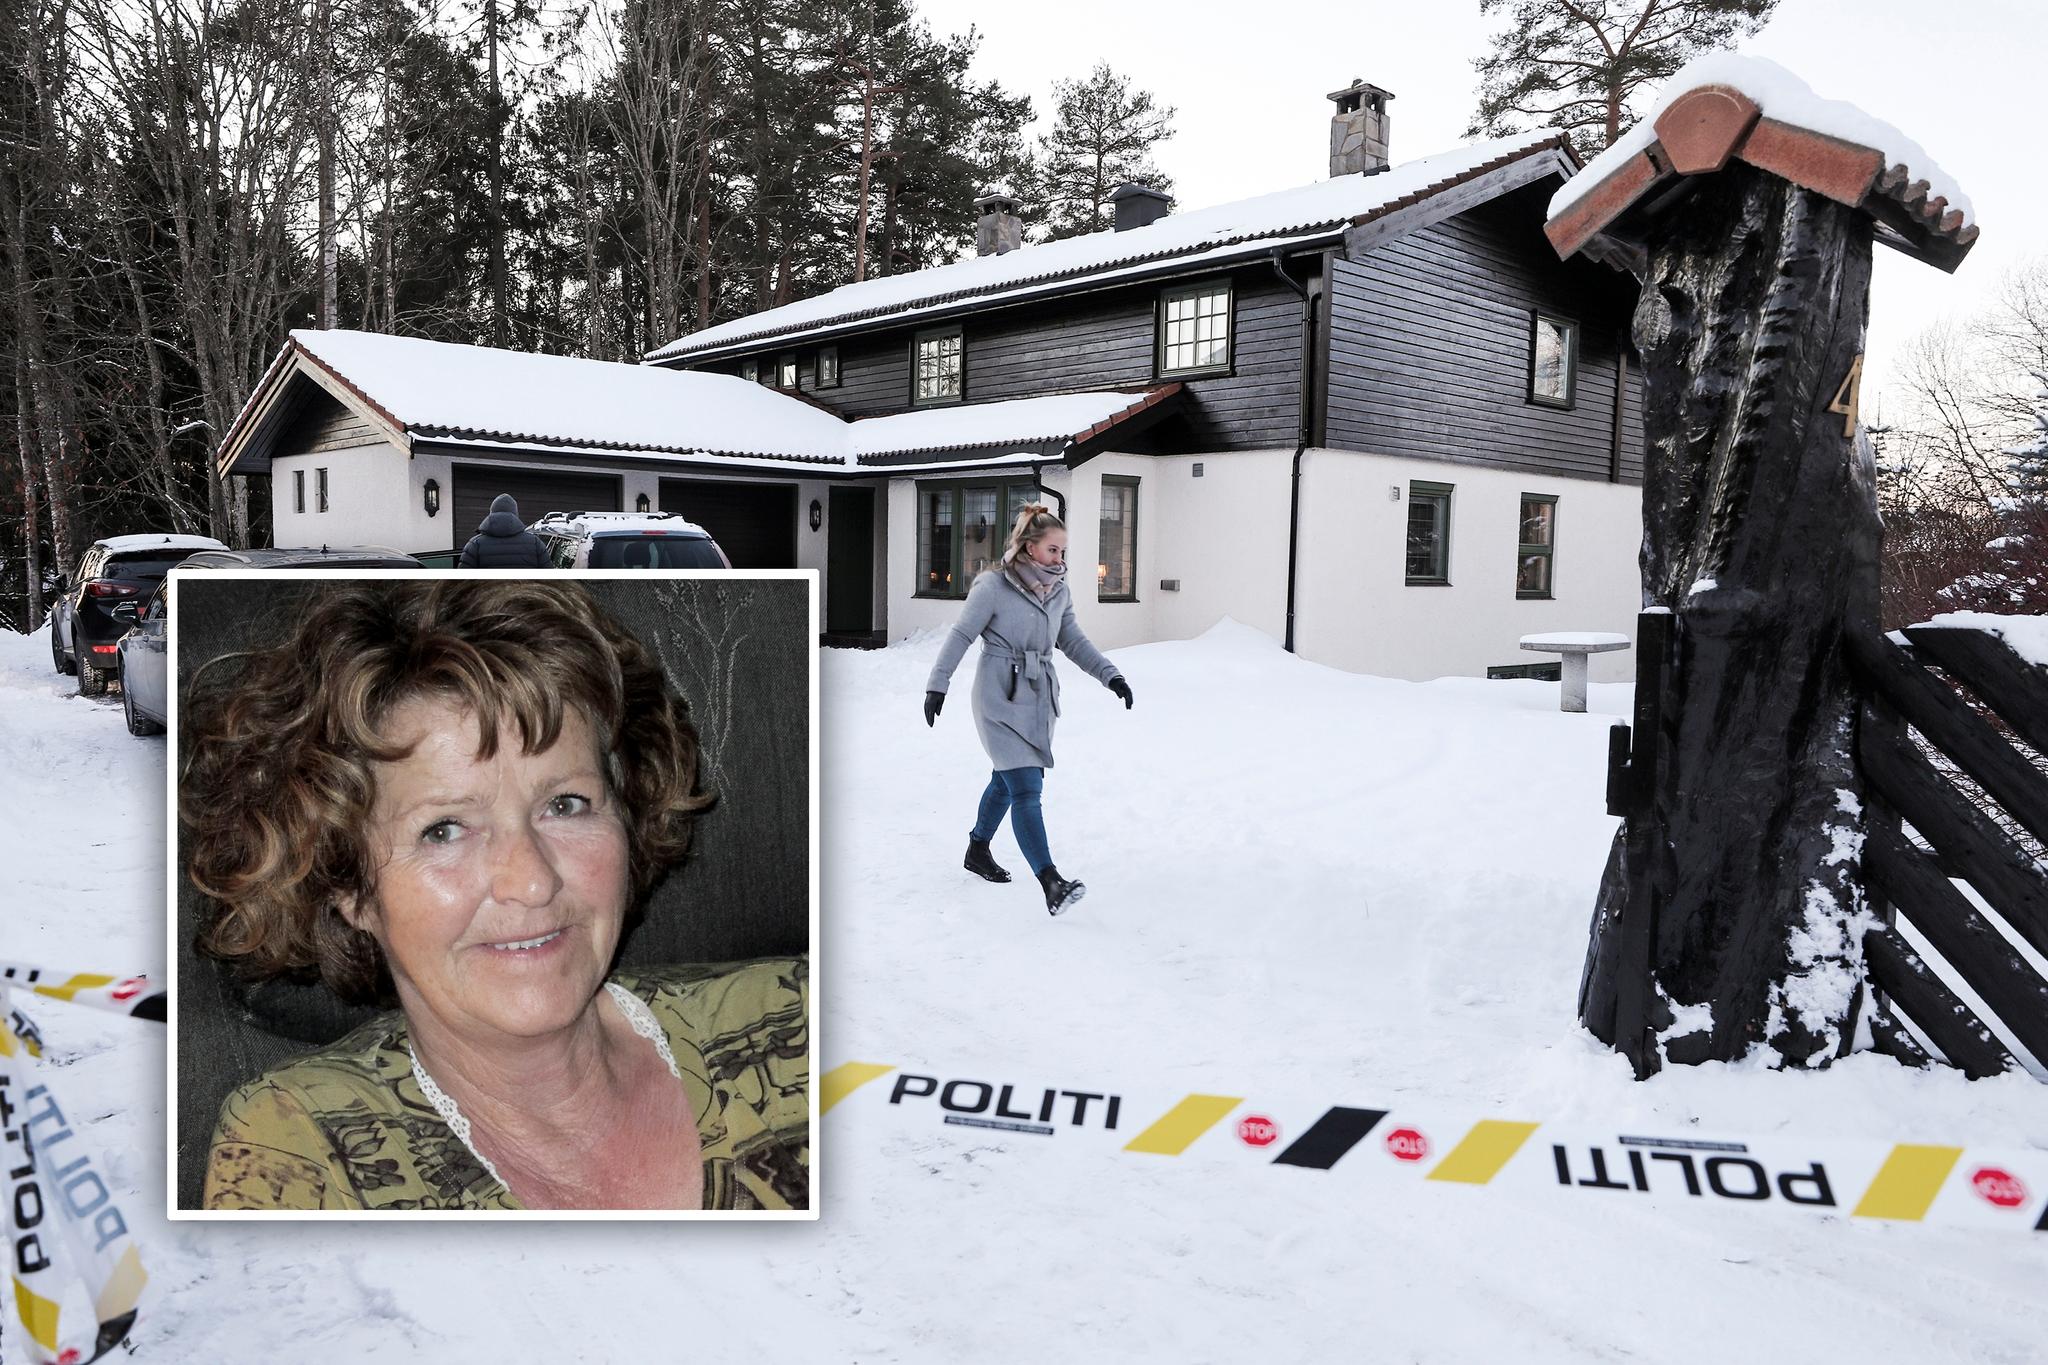  Anne-Elisabeth Falkevik Hagen (68) forsvant fra familiens bolig i Lørenskog i oktober. Politiet etterforsker saken som en kidnapping. Huset ligger i en rolig blindvei og bærer ikke preg av at en av Norges rikeste menn bor der. Onsdag formiddag sperret politiet av området rundt huset.